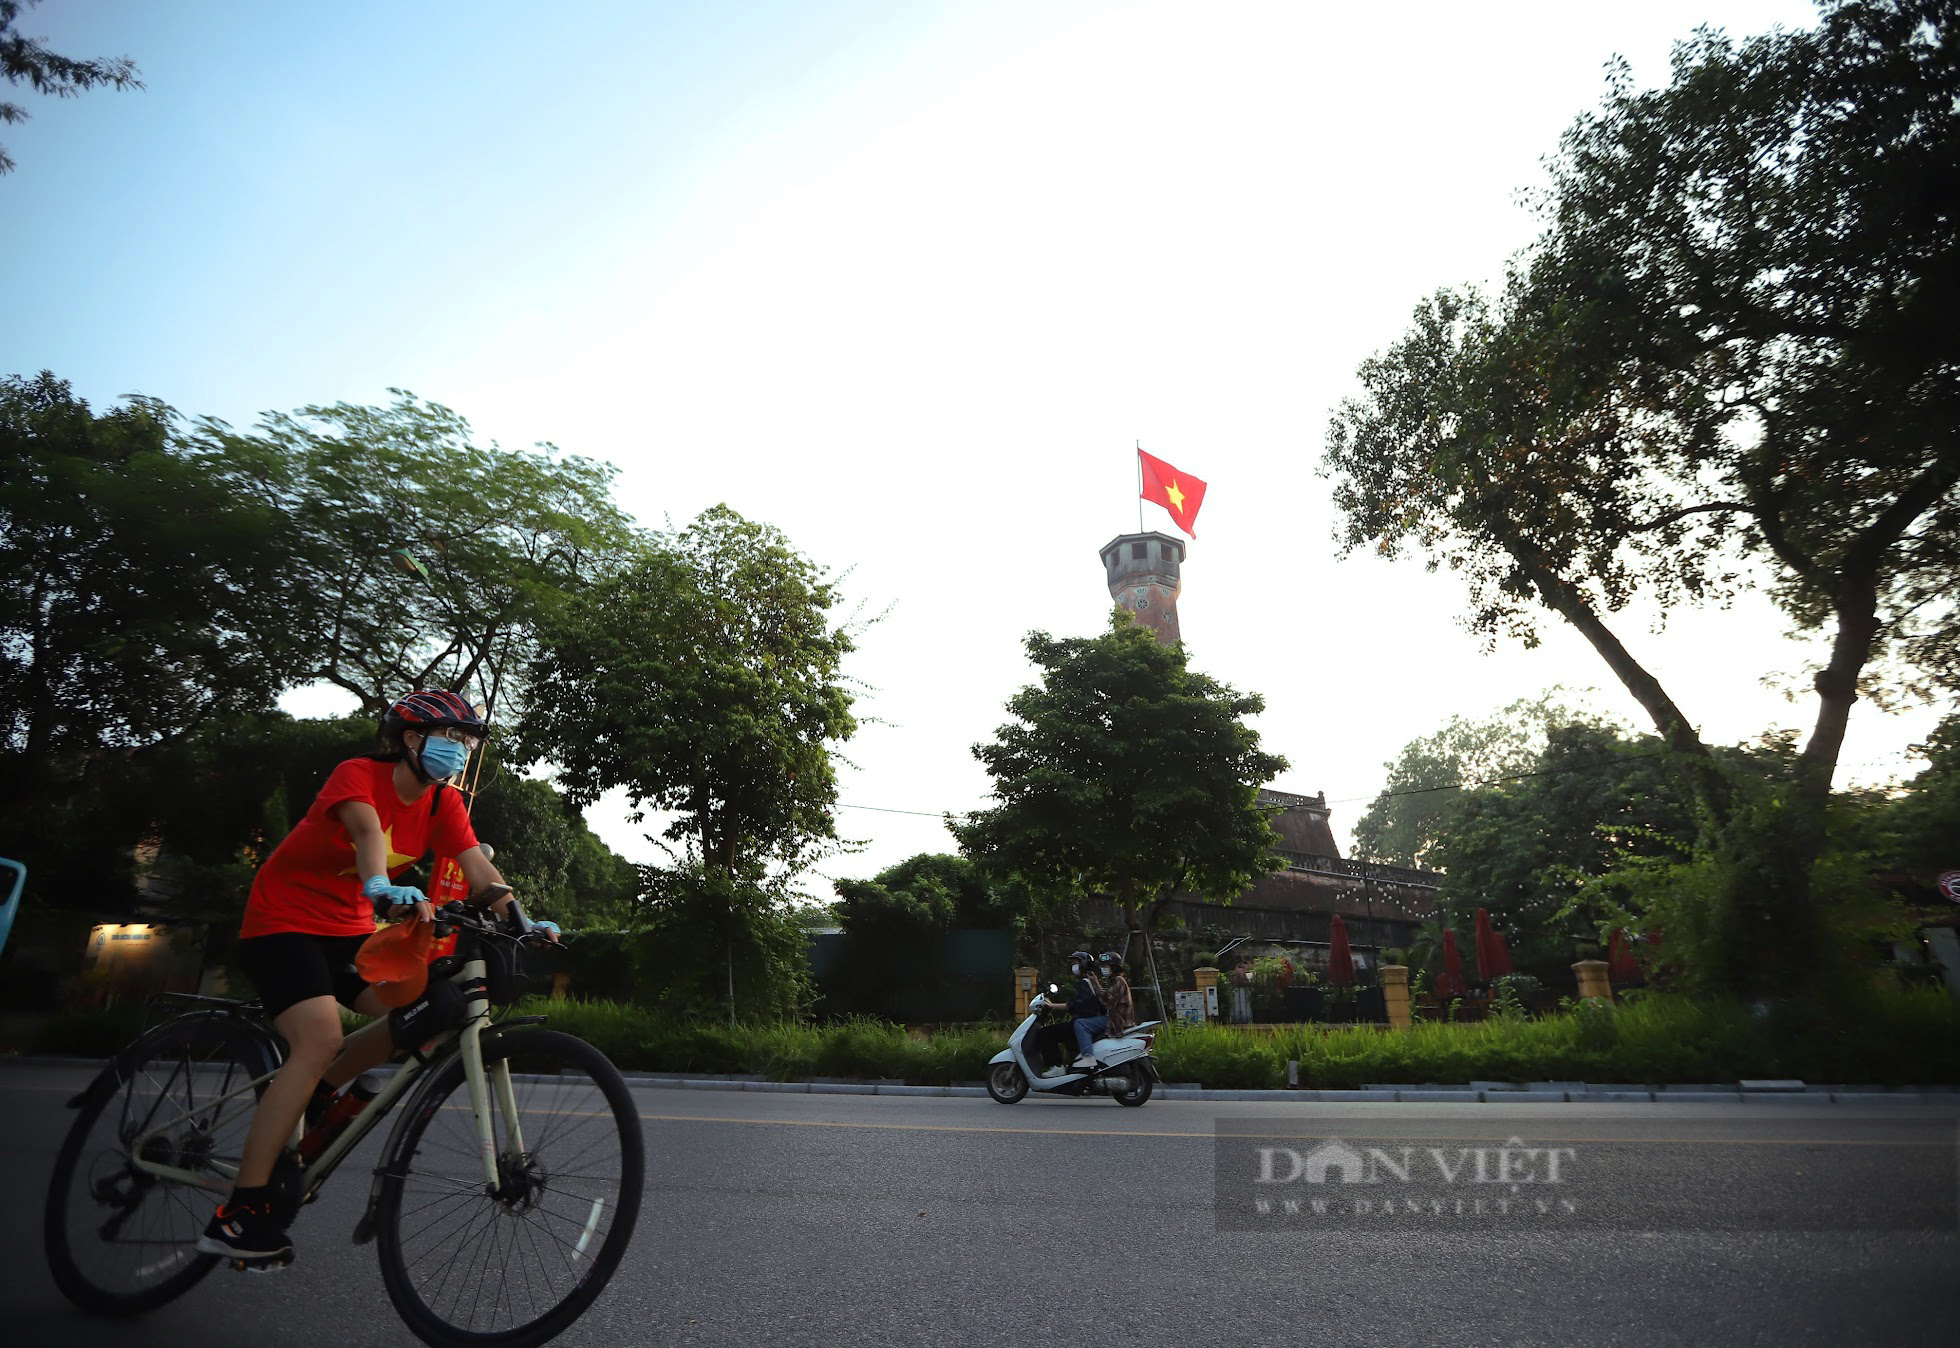 Đường phố Hà Nội: Hà Nội là một thành phố độc đáo với những con phố đẹp và lịch sử. Hãy xem hình ảnh về những con đường đông đúc và thú vị nhất của Hà Nội để cảm nhận được nhịp sống sôi động của người dân địa phương và làn gió mới lạ của thành phố này.